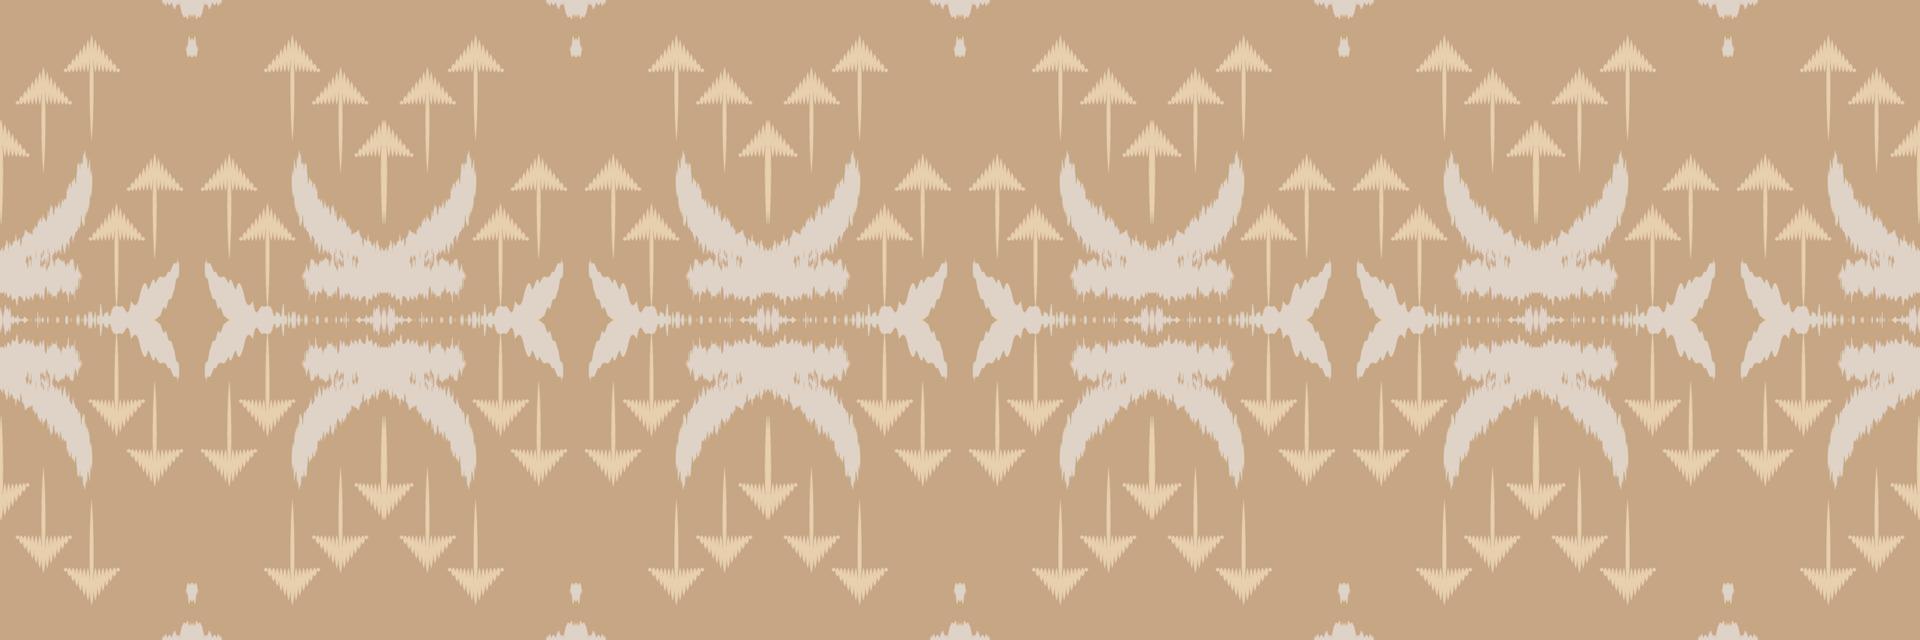 batik têxtil étnico ikat moldura sem costura padrão design de vetor digital para impressão saree kurti borneo tecido borda escova símbolos designer de amostras